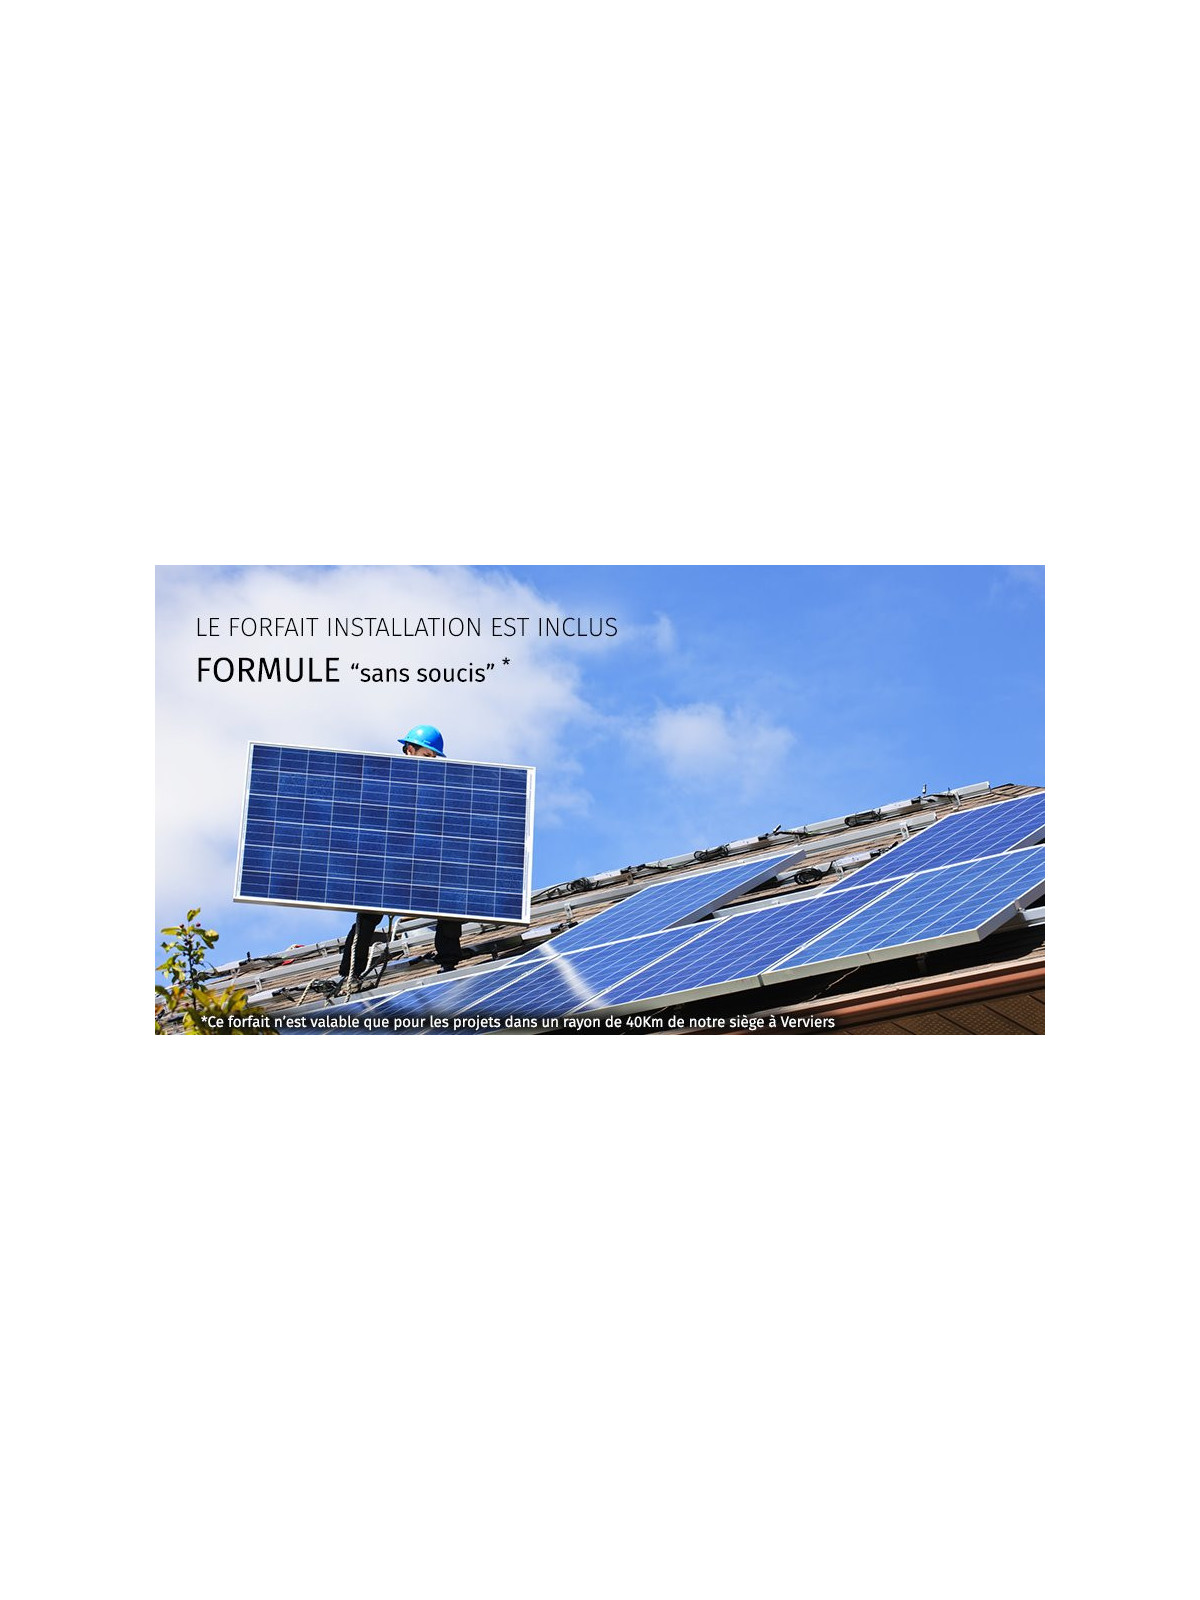 Installations solaire de 12 panneaux - 3kW